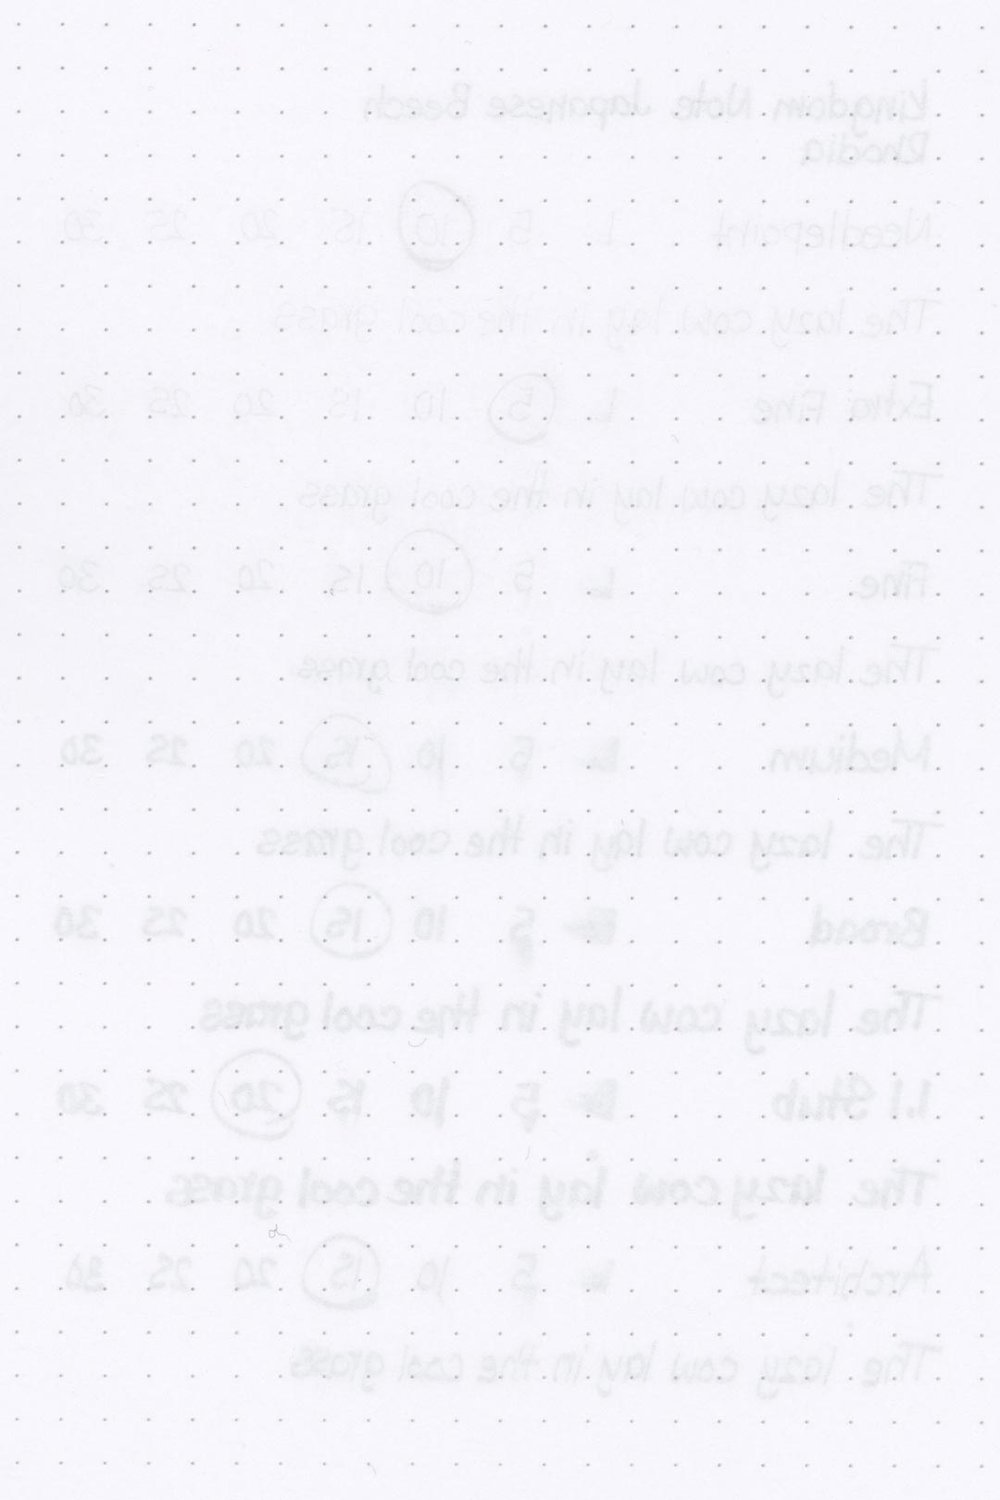 Kingdom-Note-Japanese-Beech-Ink-Test-Rhodia-Rear.jpg